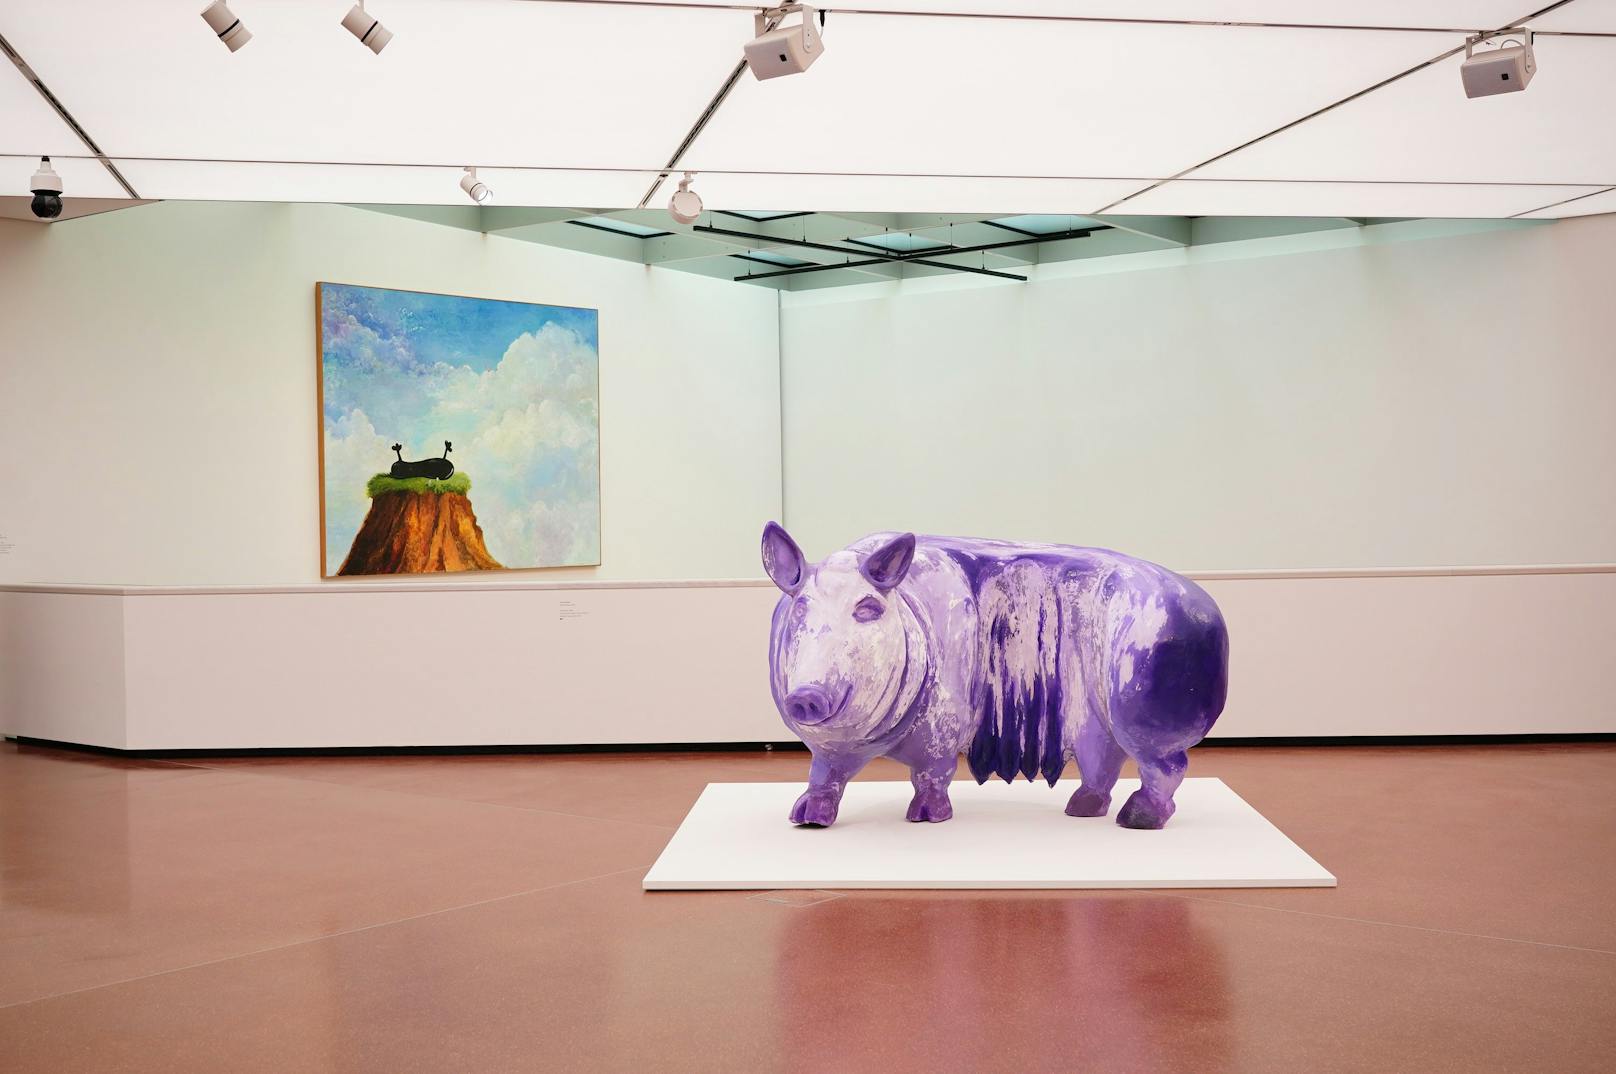 Eines der Highlights:&nbsp;Die überlebensgroße Schweineskulptur "UR Mutter", die Künstlerin <strong>Lena Henke</strong> violett bemalte.